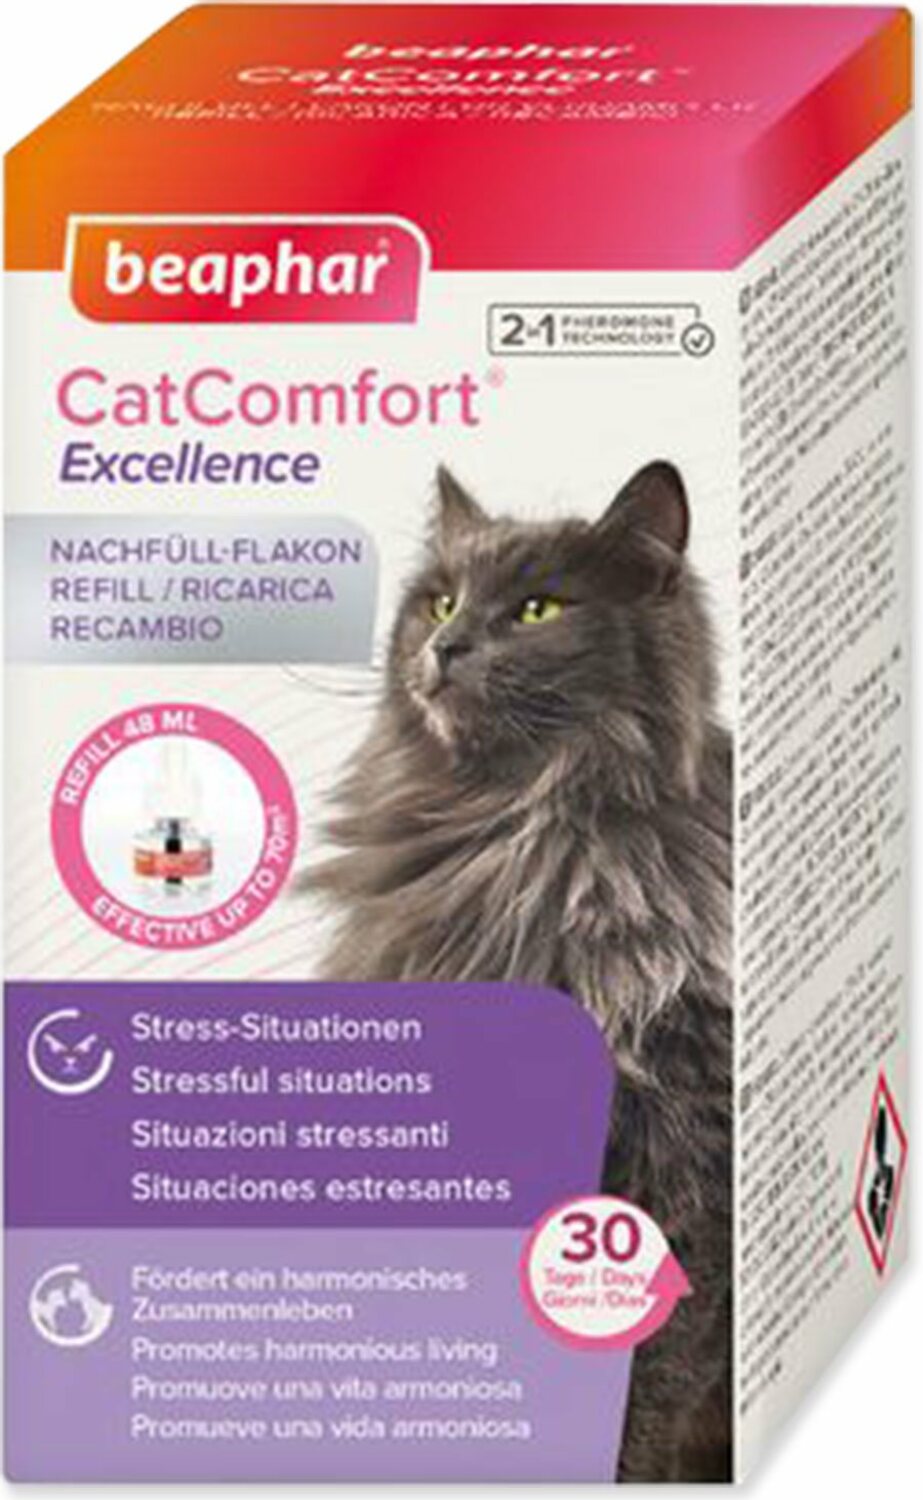 Náhradní náplň do difuzéru CatComfort Excellence 48ml